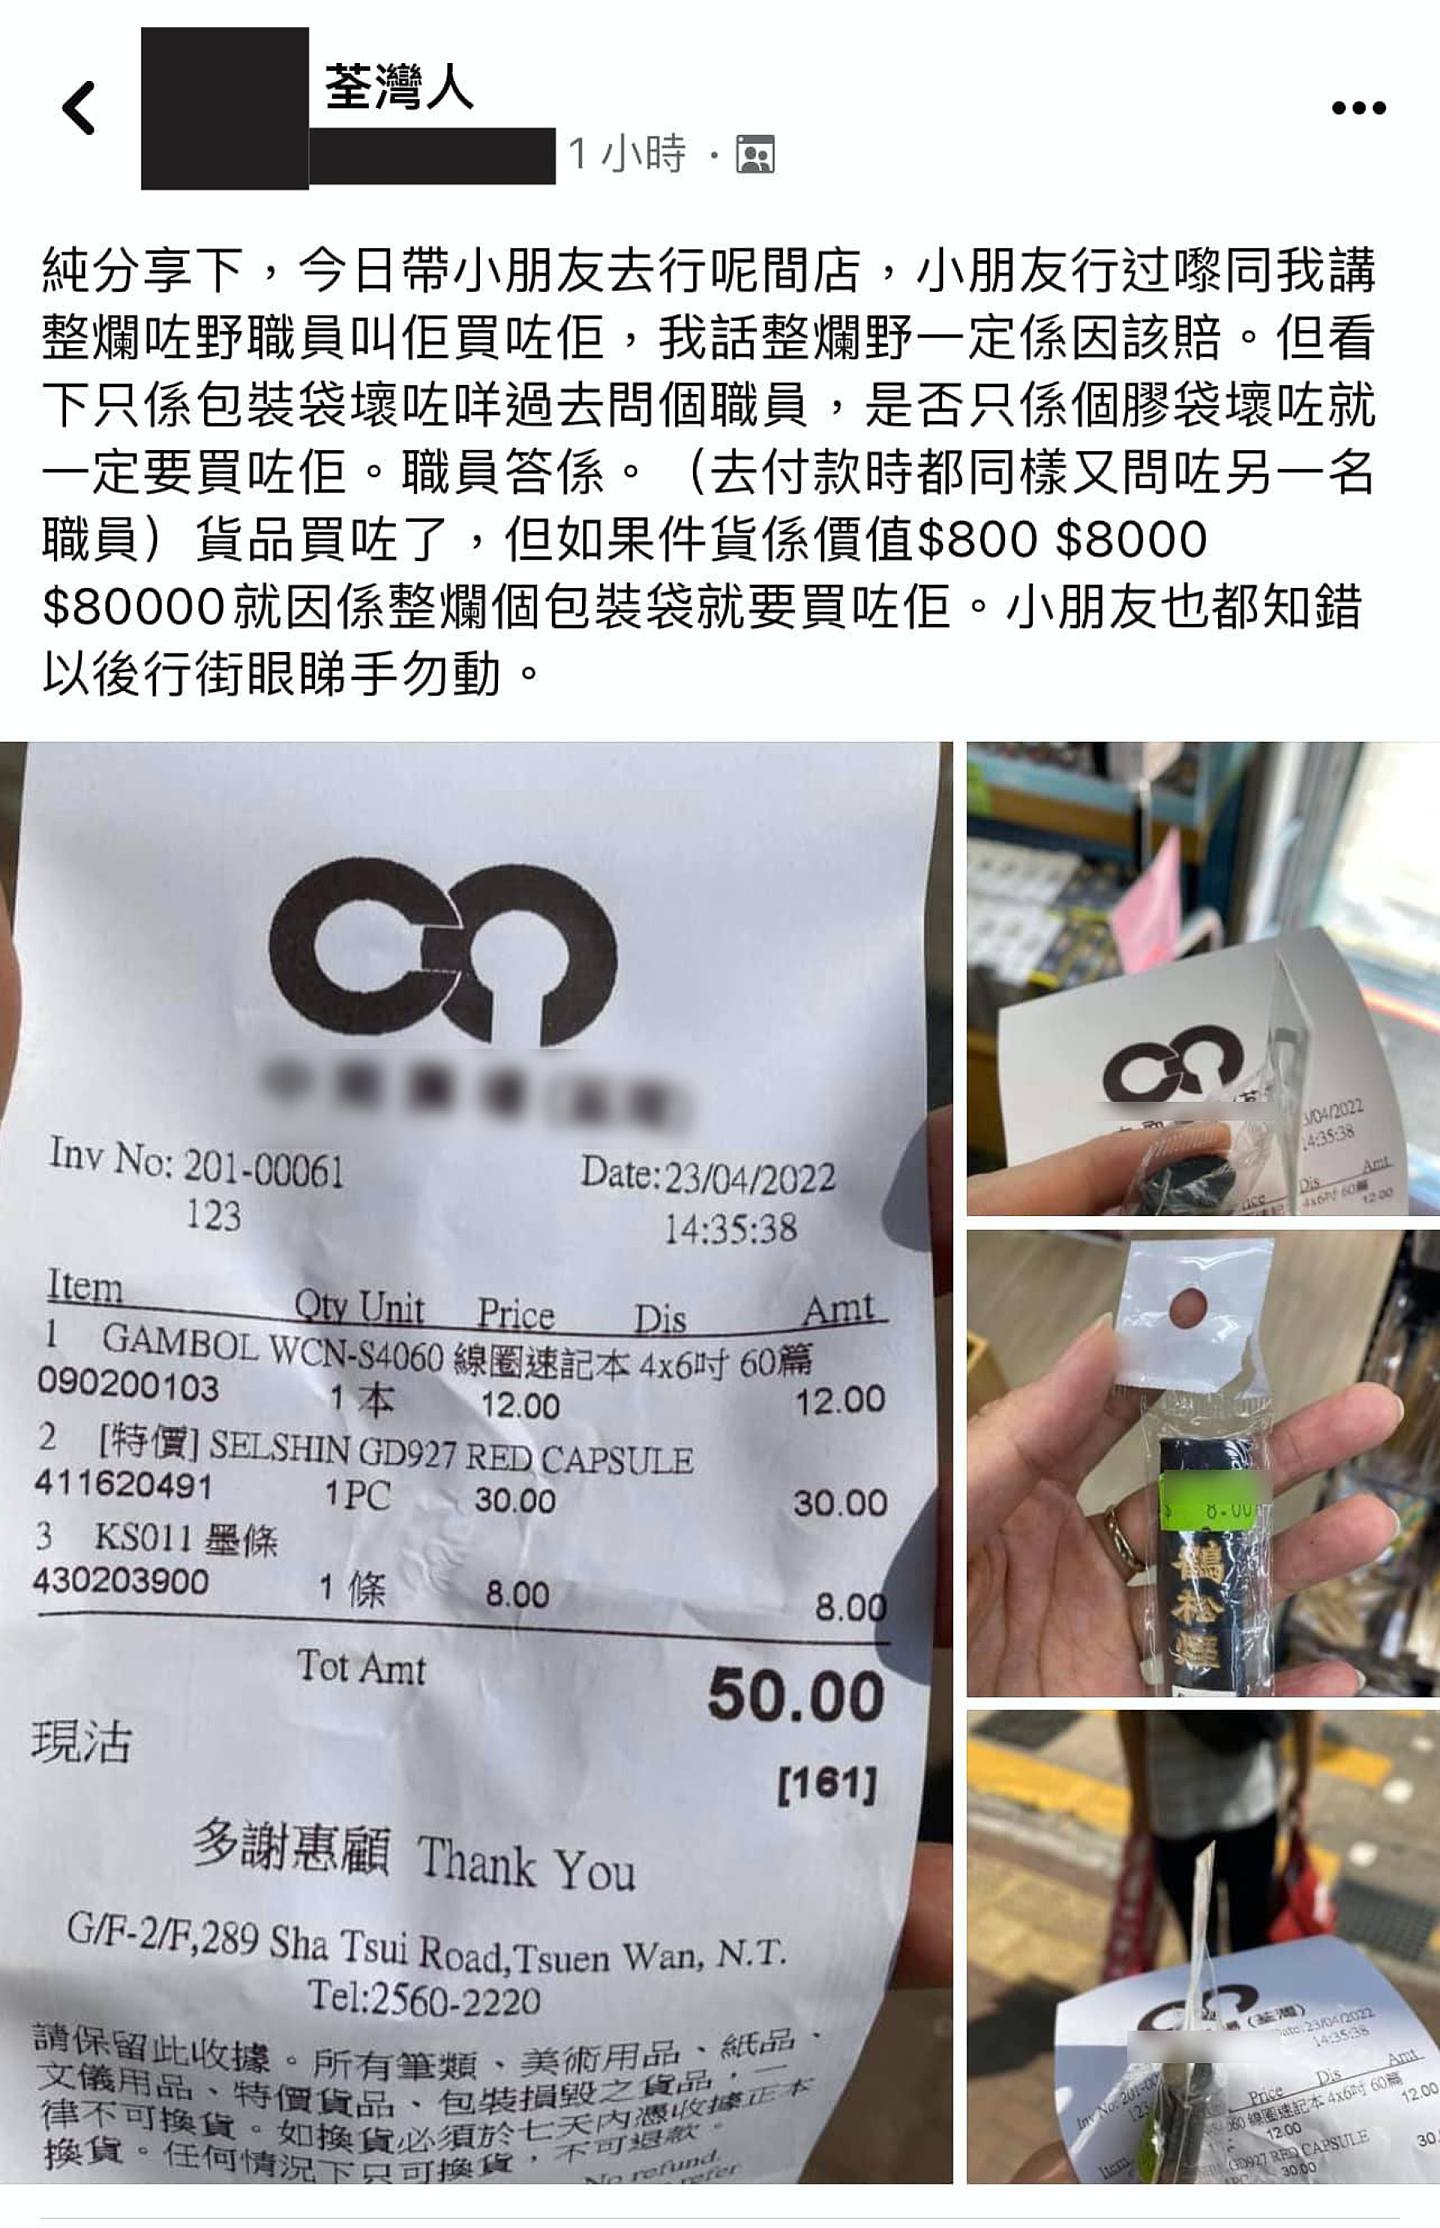 有港妈在讨论区发文表示，日前到荃湾一间文具店购物时，其小孩损坏了价值8元墨条的包装，结果被店员要求照价赔偿，被迫买下。 （Facebook群组「荃湾人」）